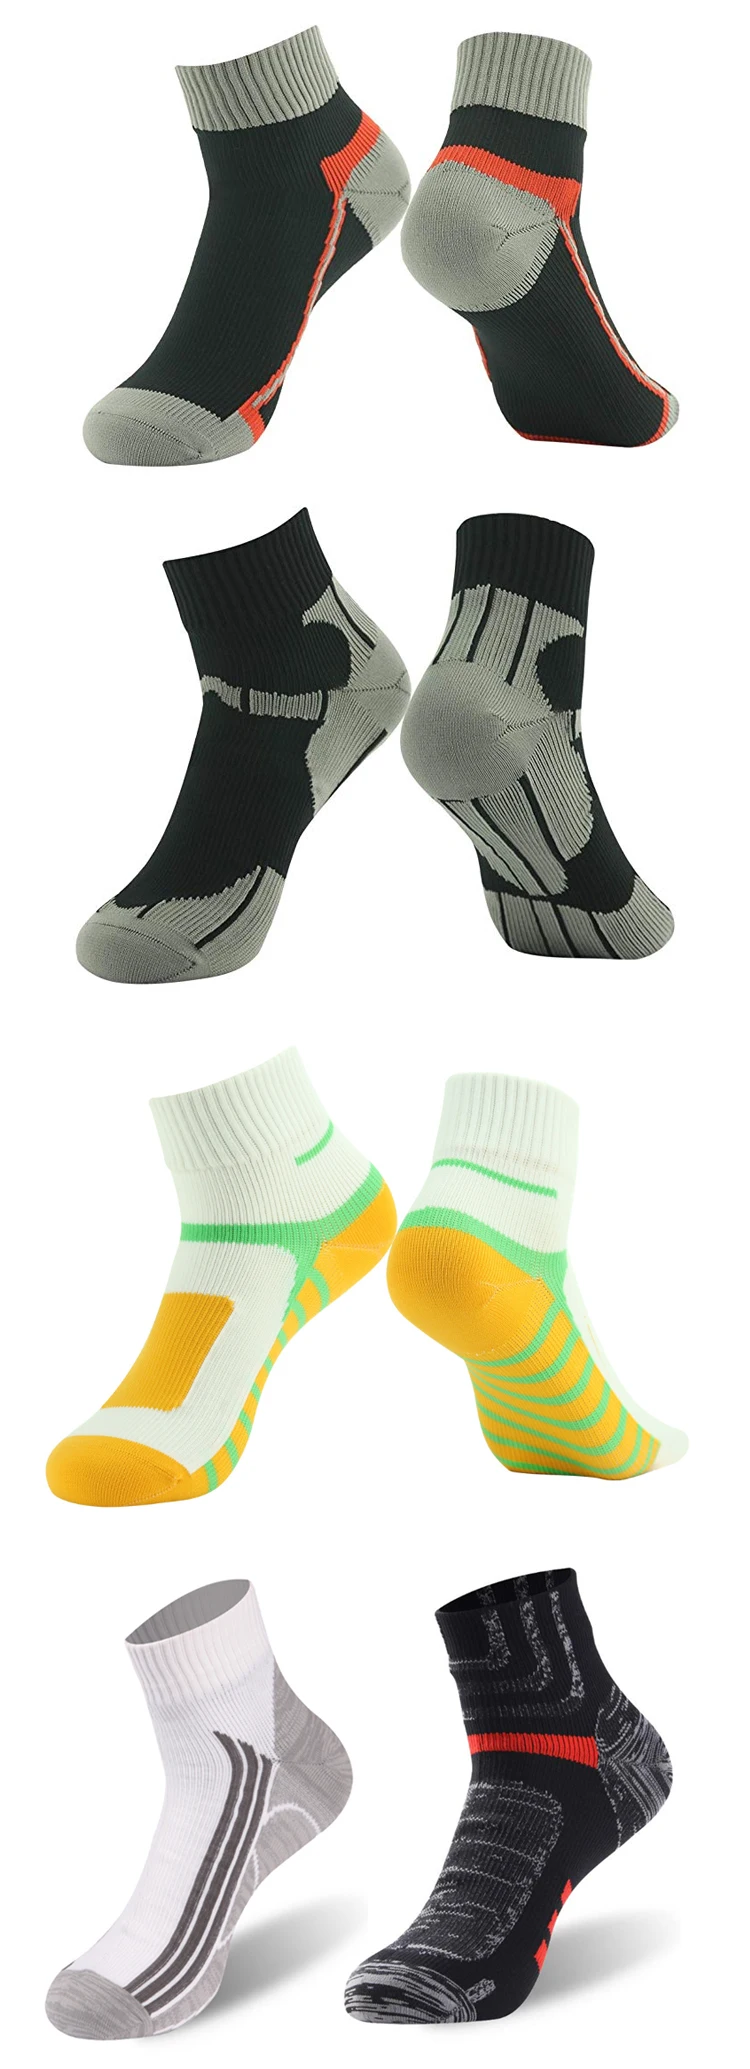 Enerup Kids Short Sports Hiking Oem Kaus Kaki Wholesale Custom Women Mens Print Waterproof Breathable Socks